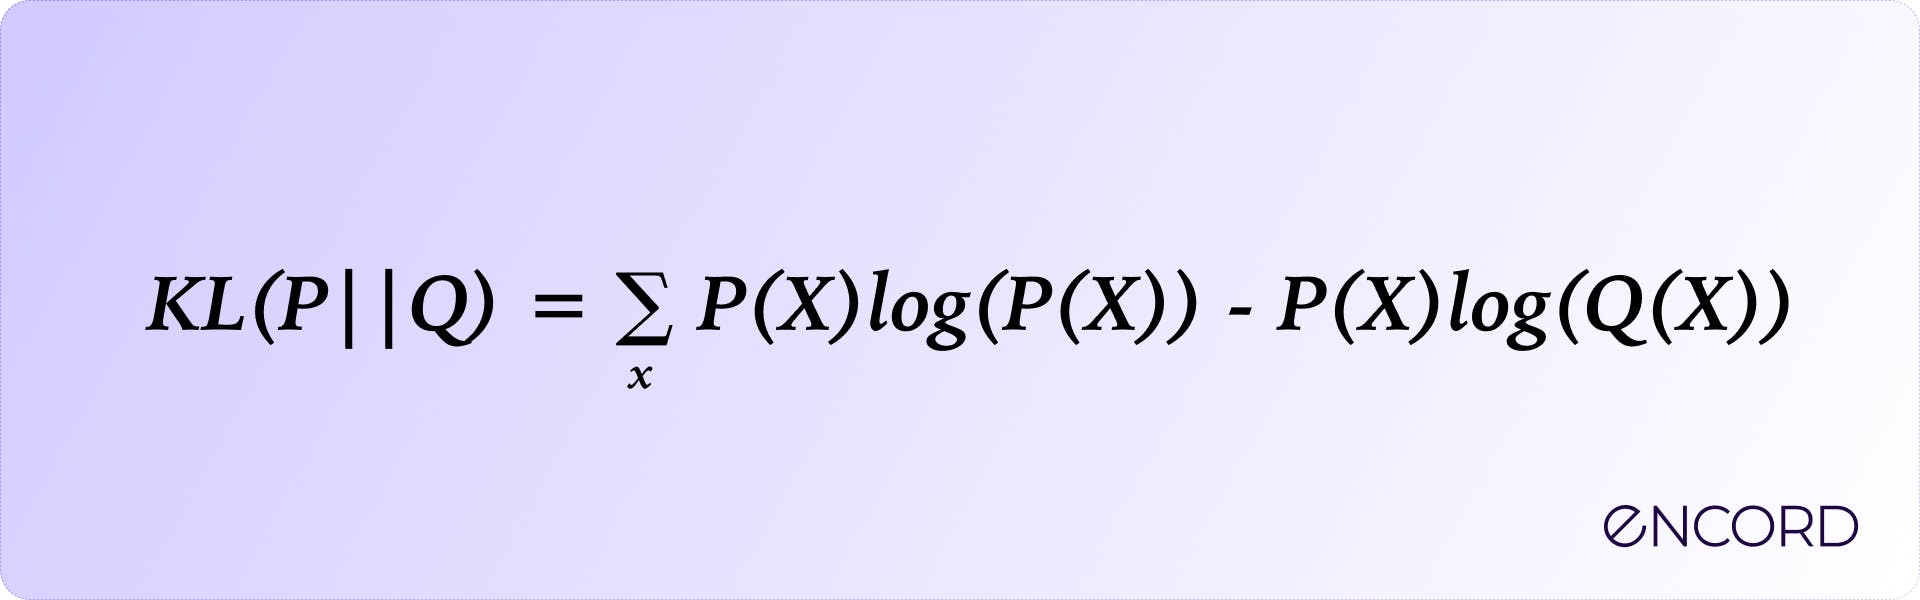 KL divergence formula